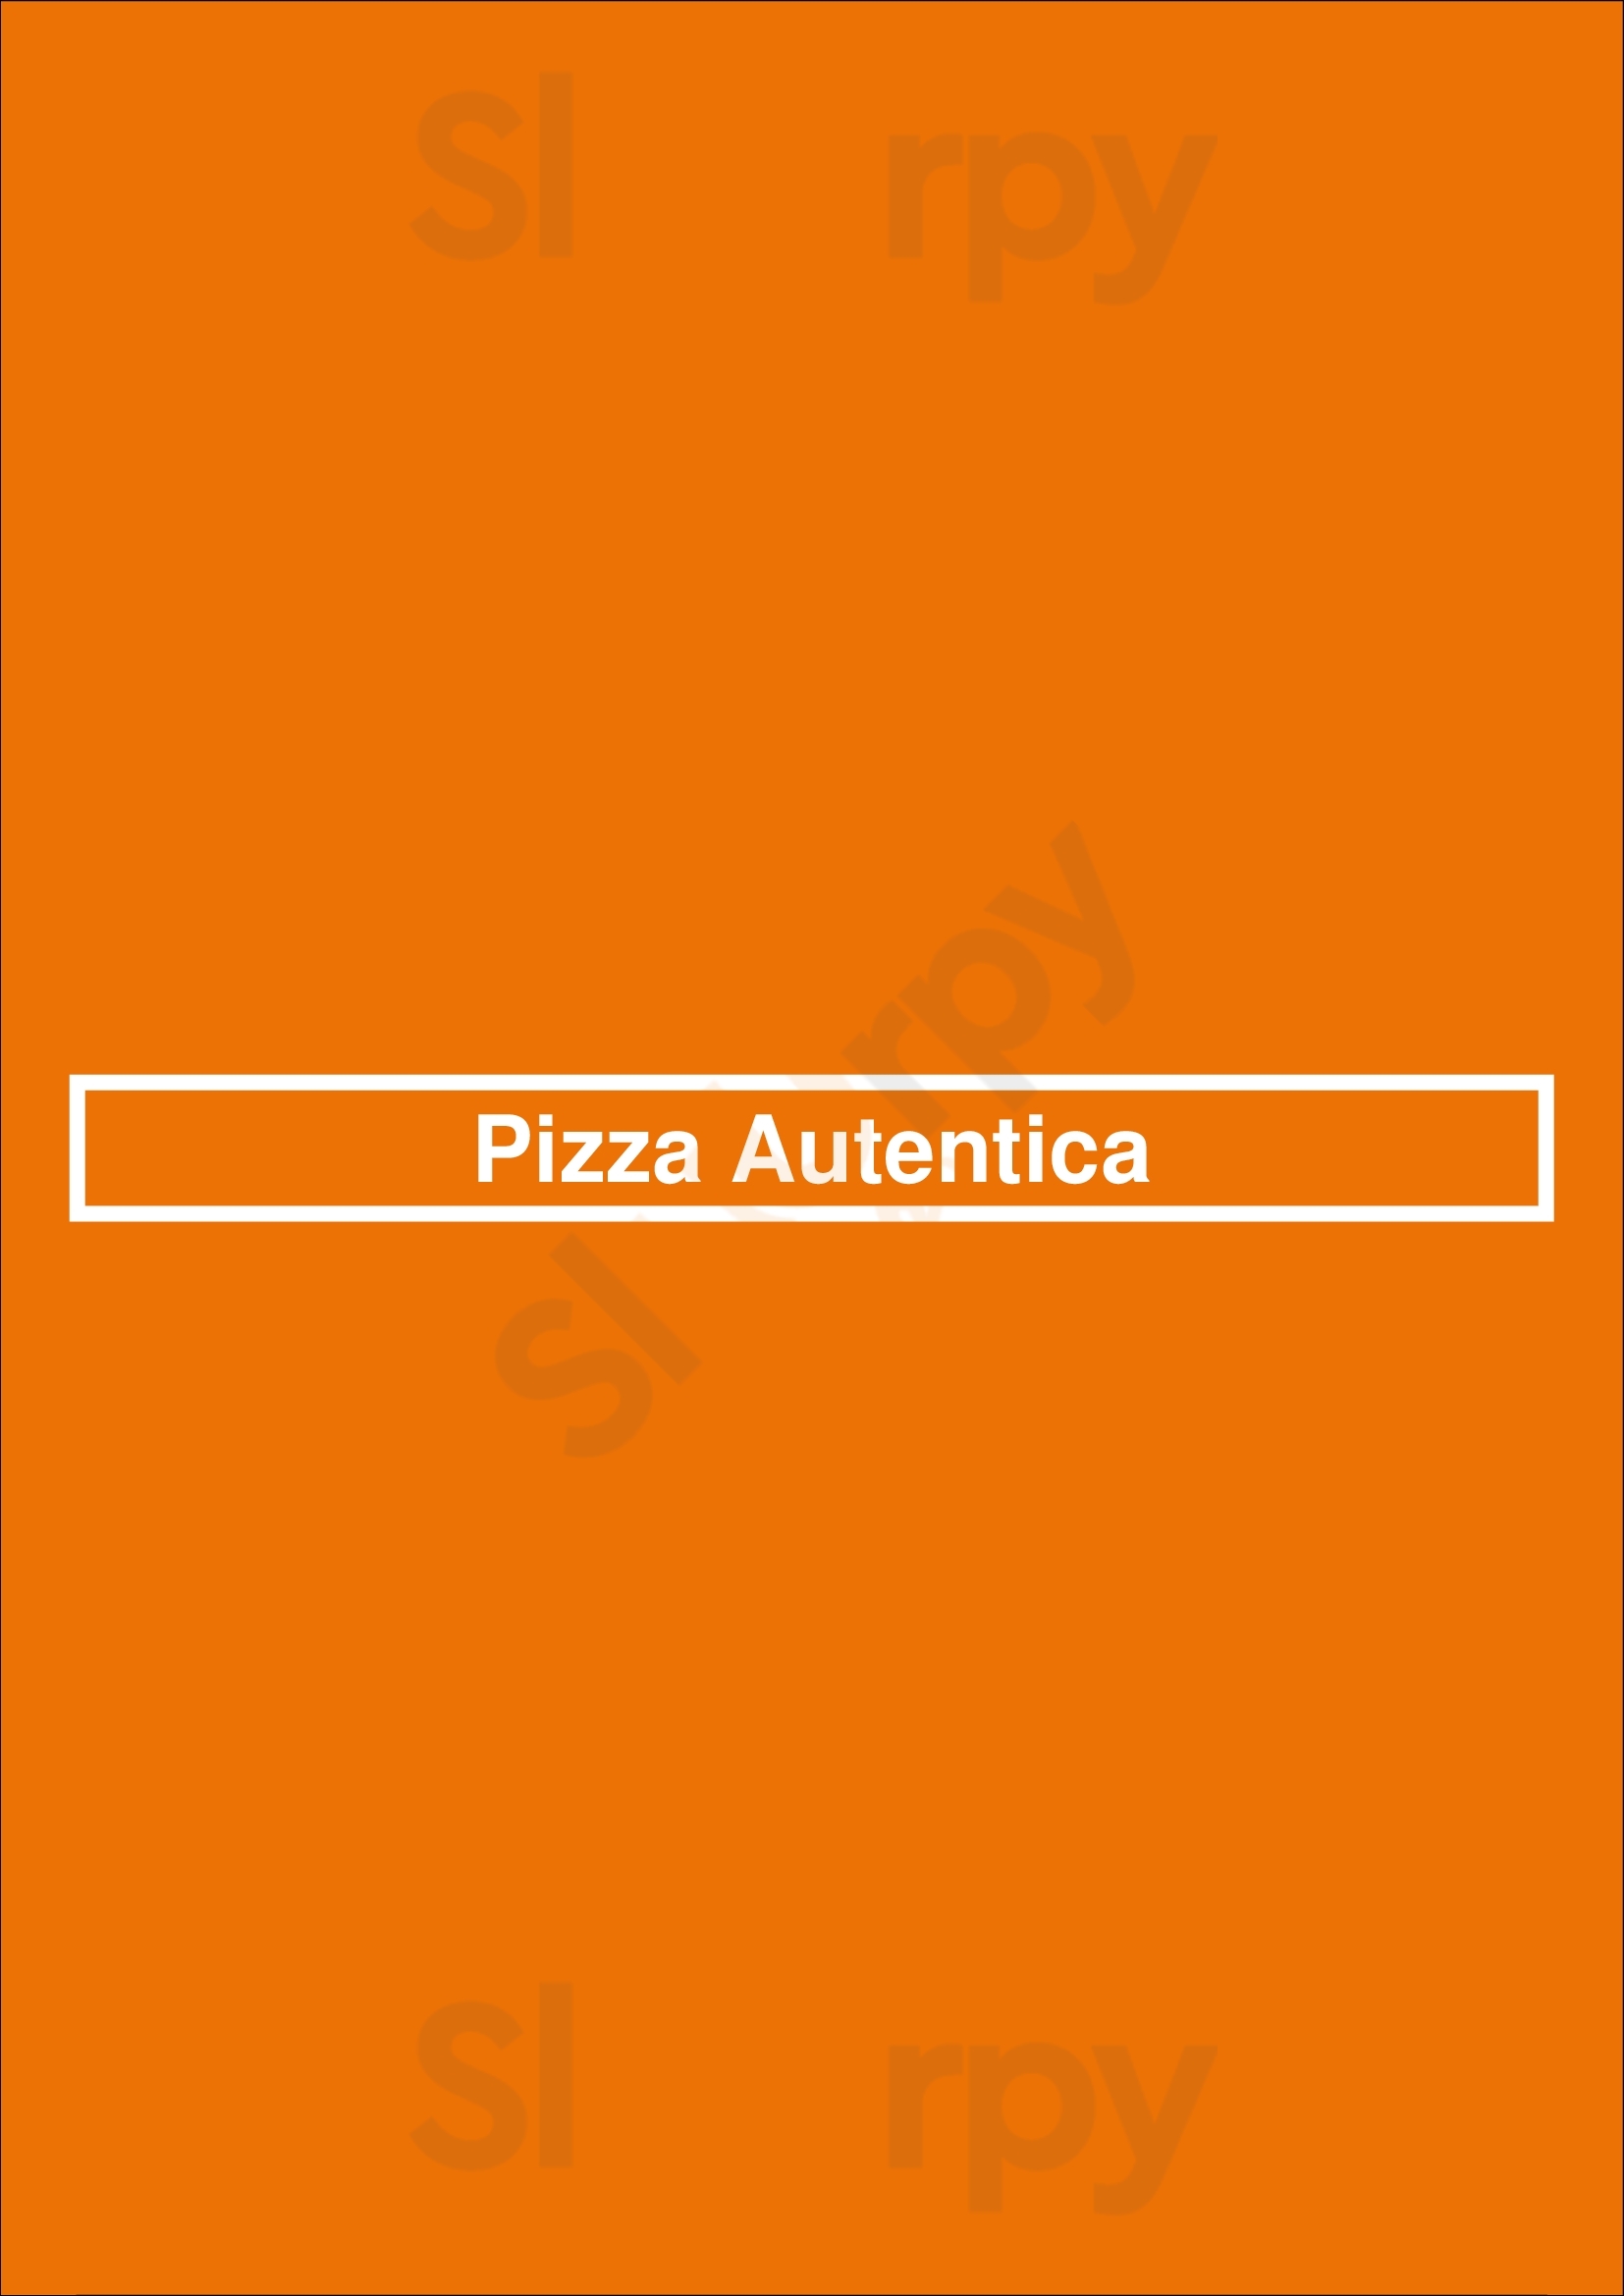 Pizza Autentica Paris Menu - 1